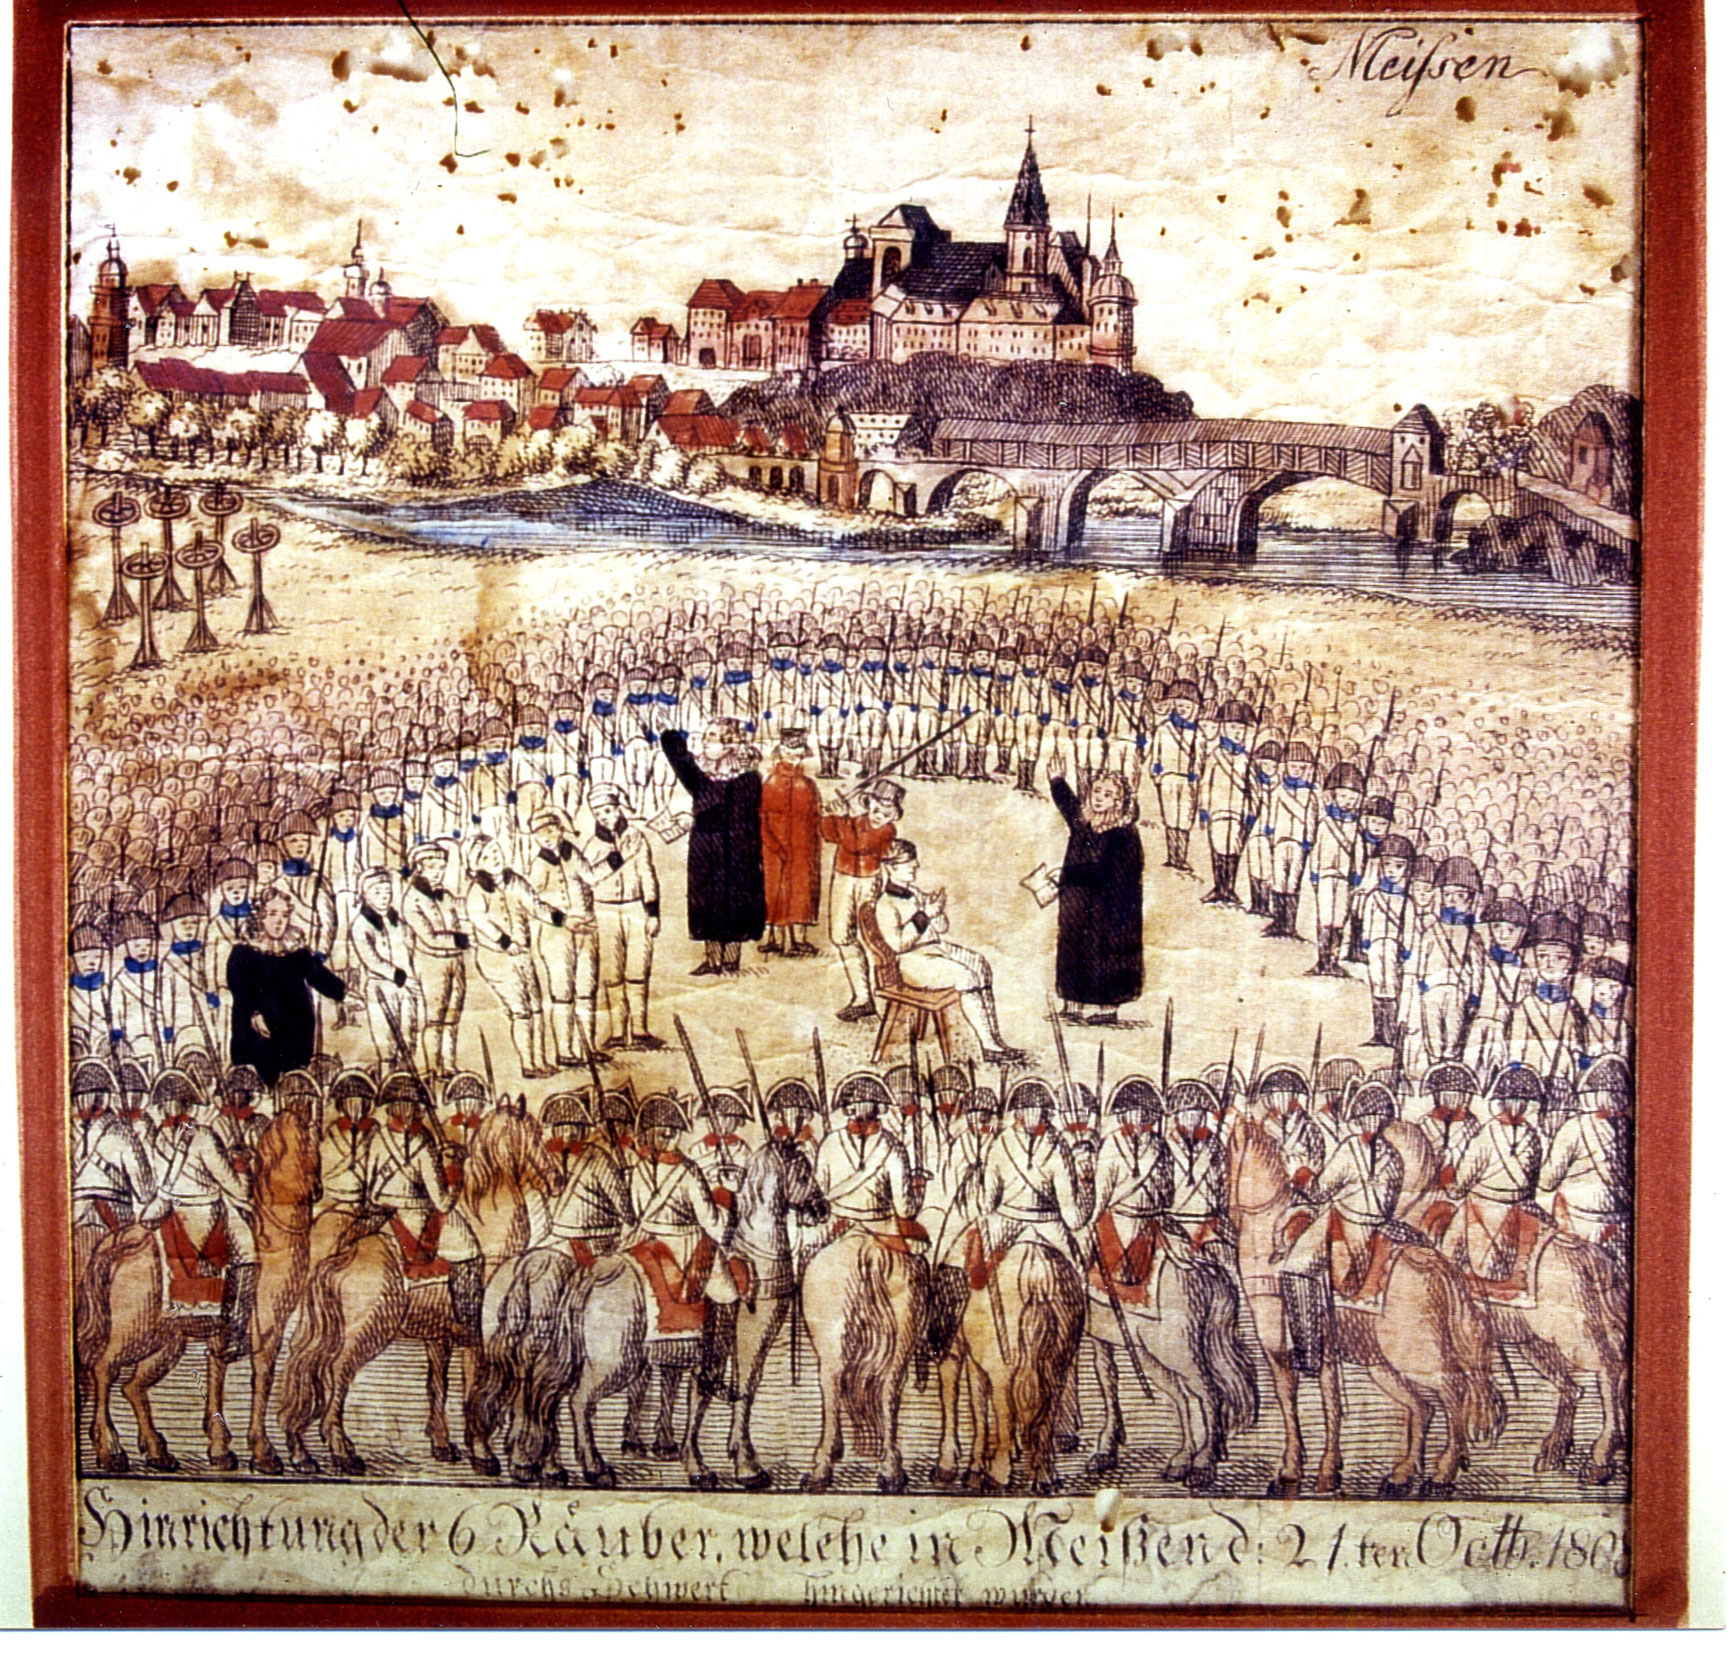 Flugblatt mit Darstellung einer Hinrichtung. Im Hintergrund ist die Stadt Meißen zu sehen.